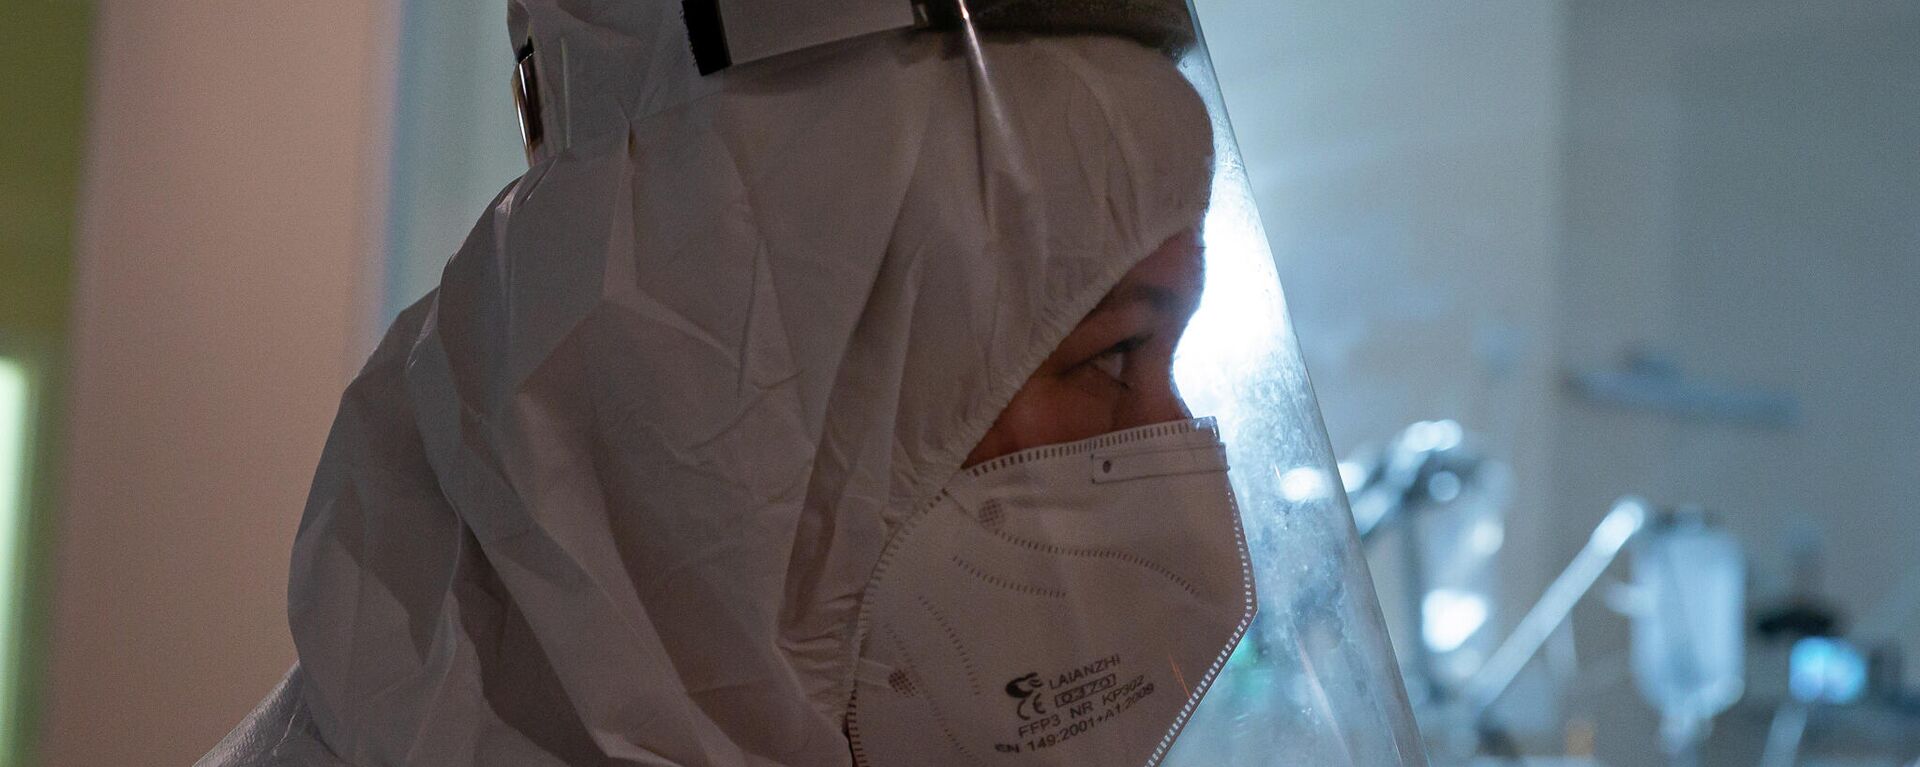 Медицинский работник в отделении интенсивной терапии в Центре легочных заболеваний и туберкулеза в Даугавпилсе - Sputnik Латвия, 1920, 28.12.2021